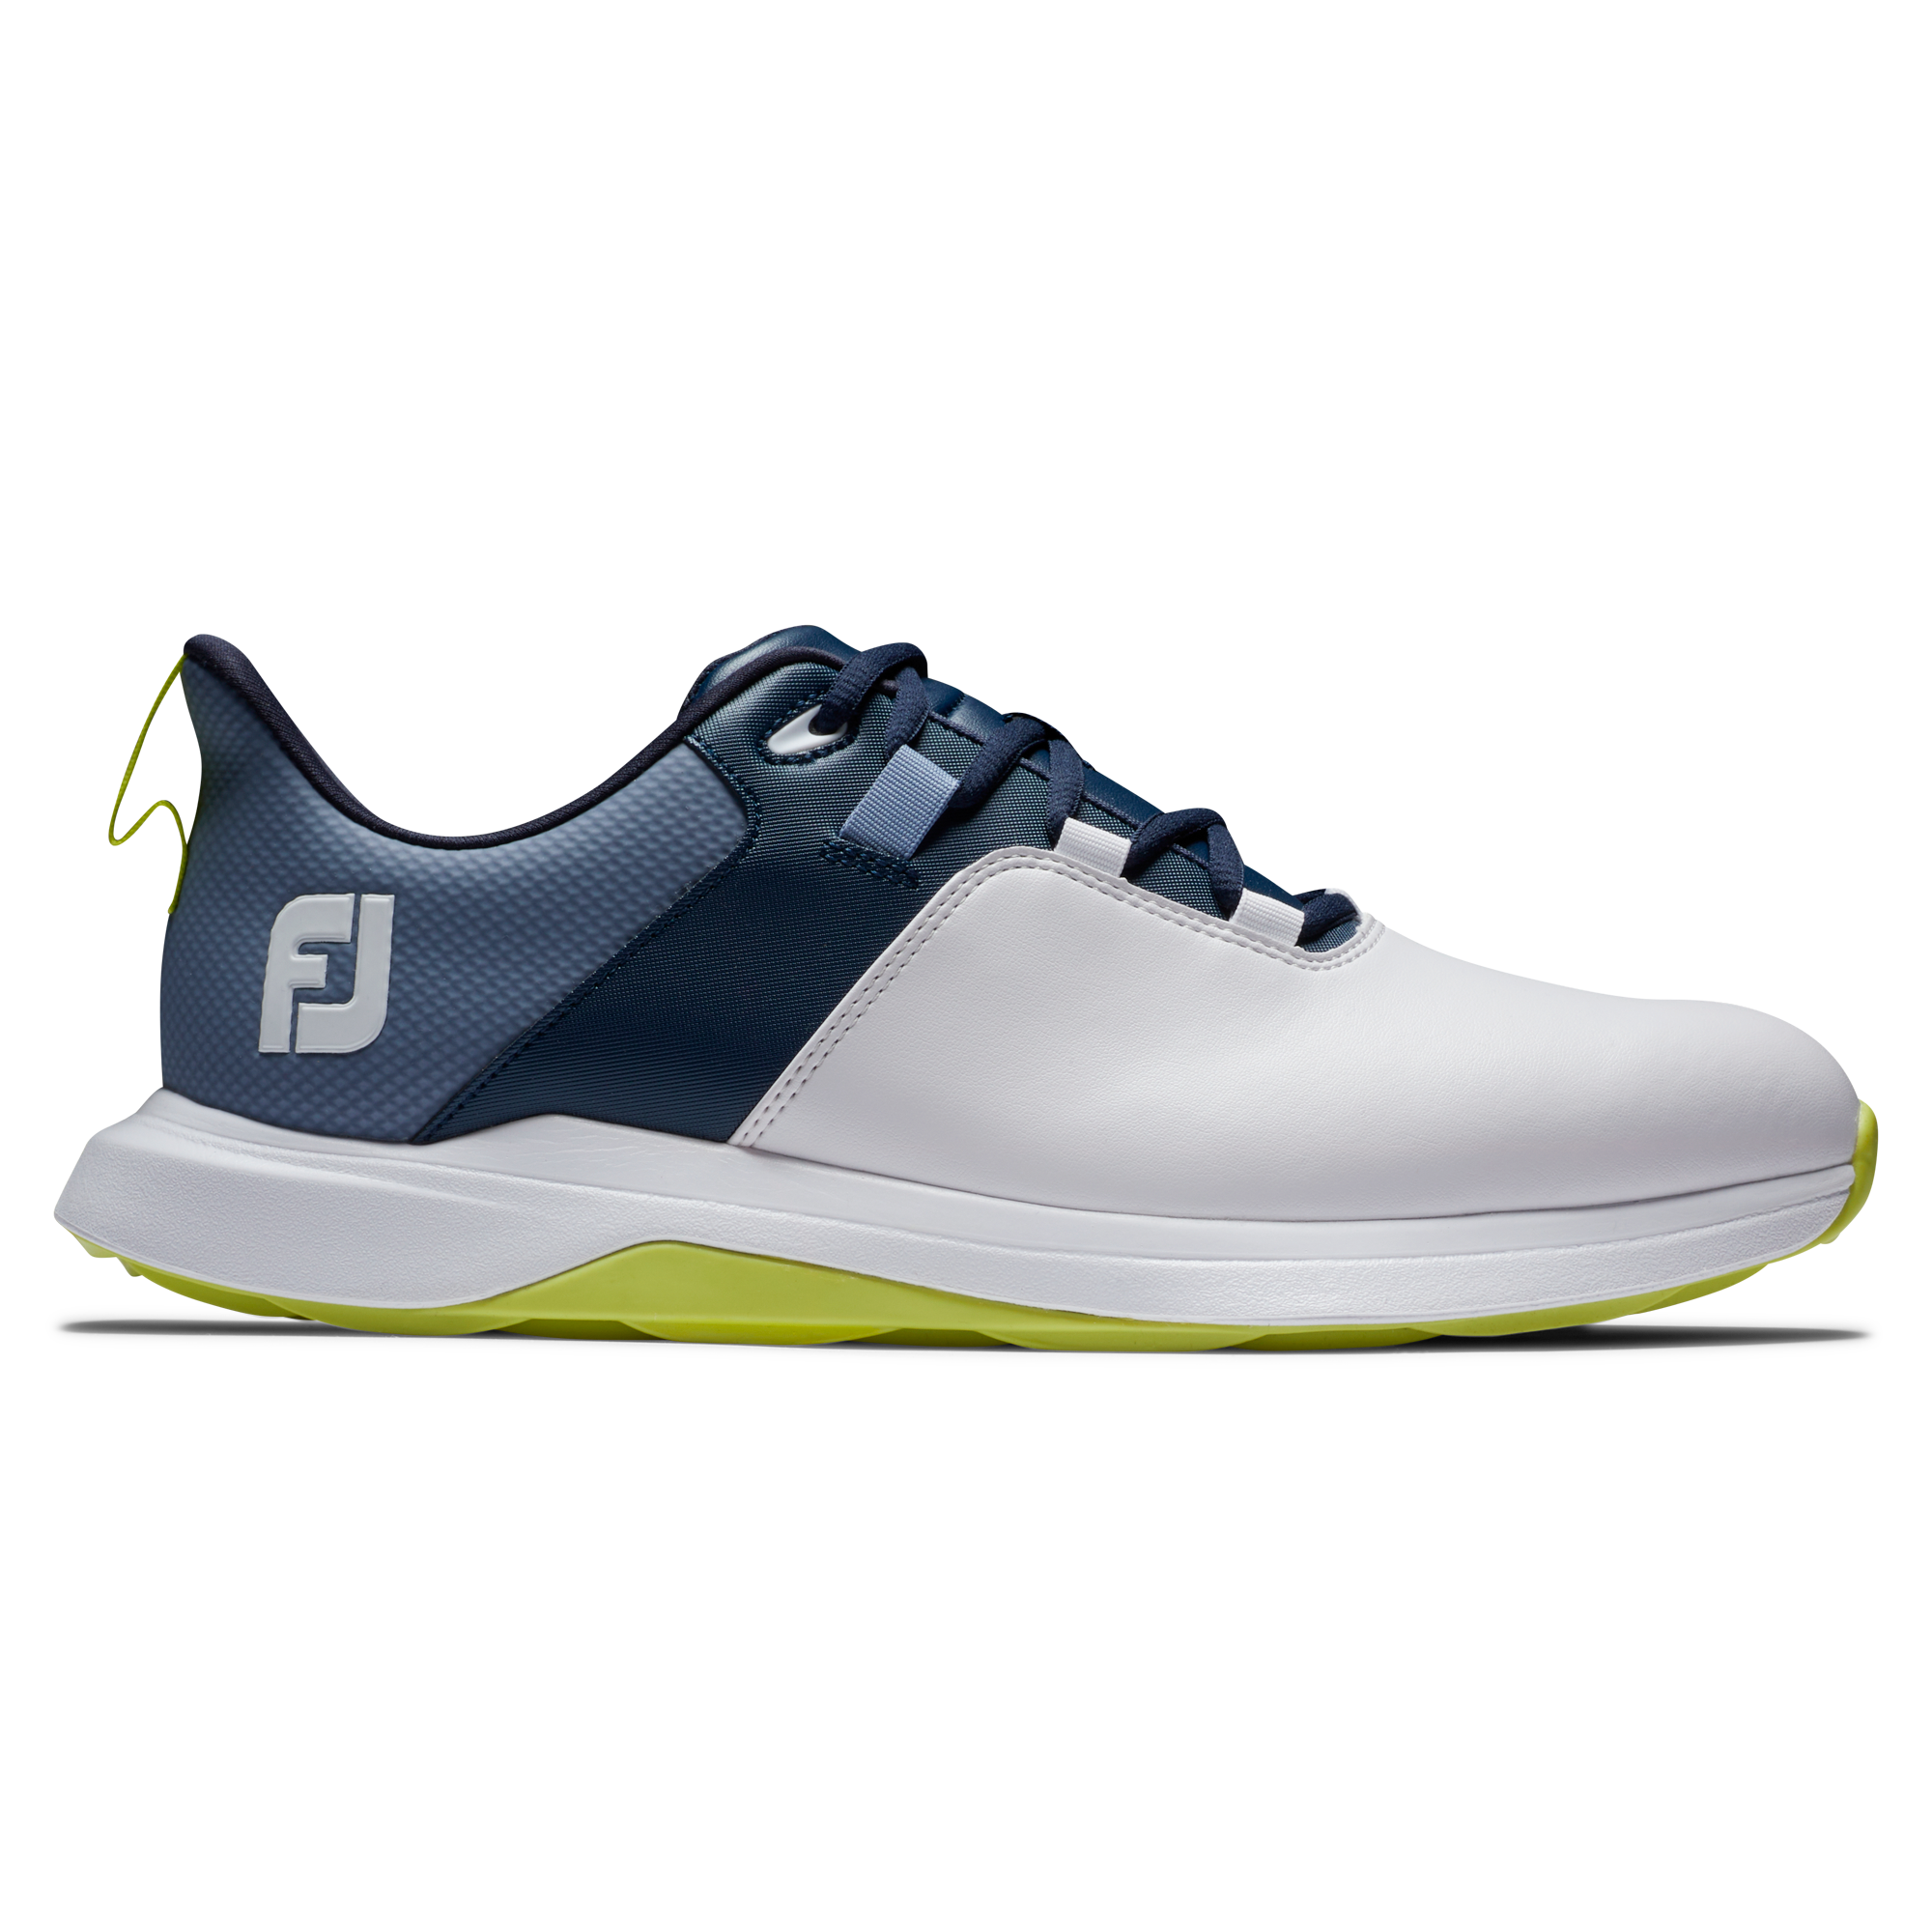 FootJoy ProLite pánské golfové boty, bílé/tmavě modré